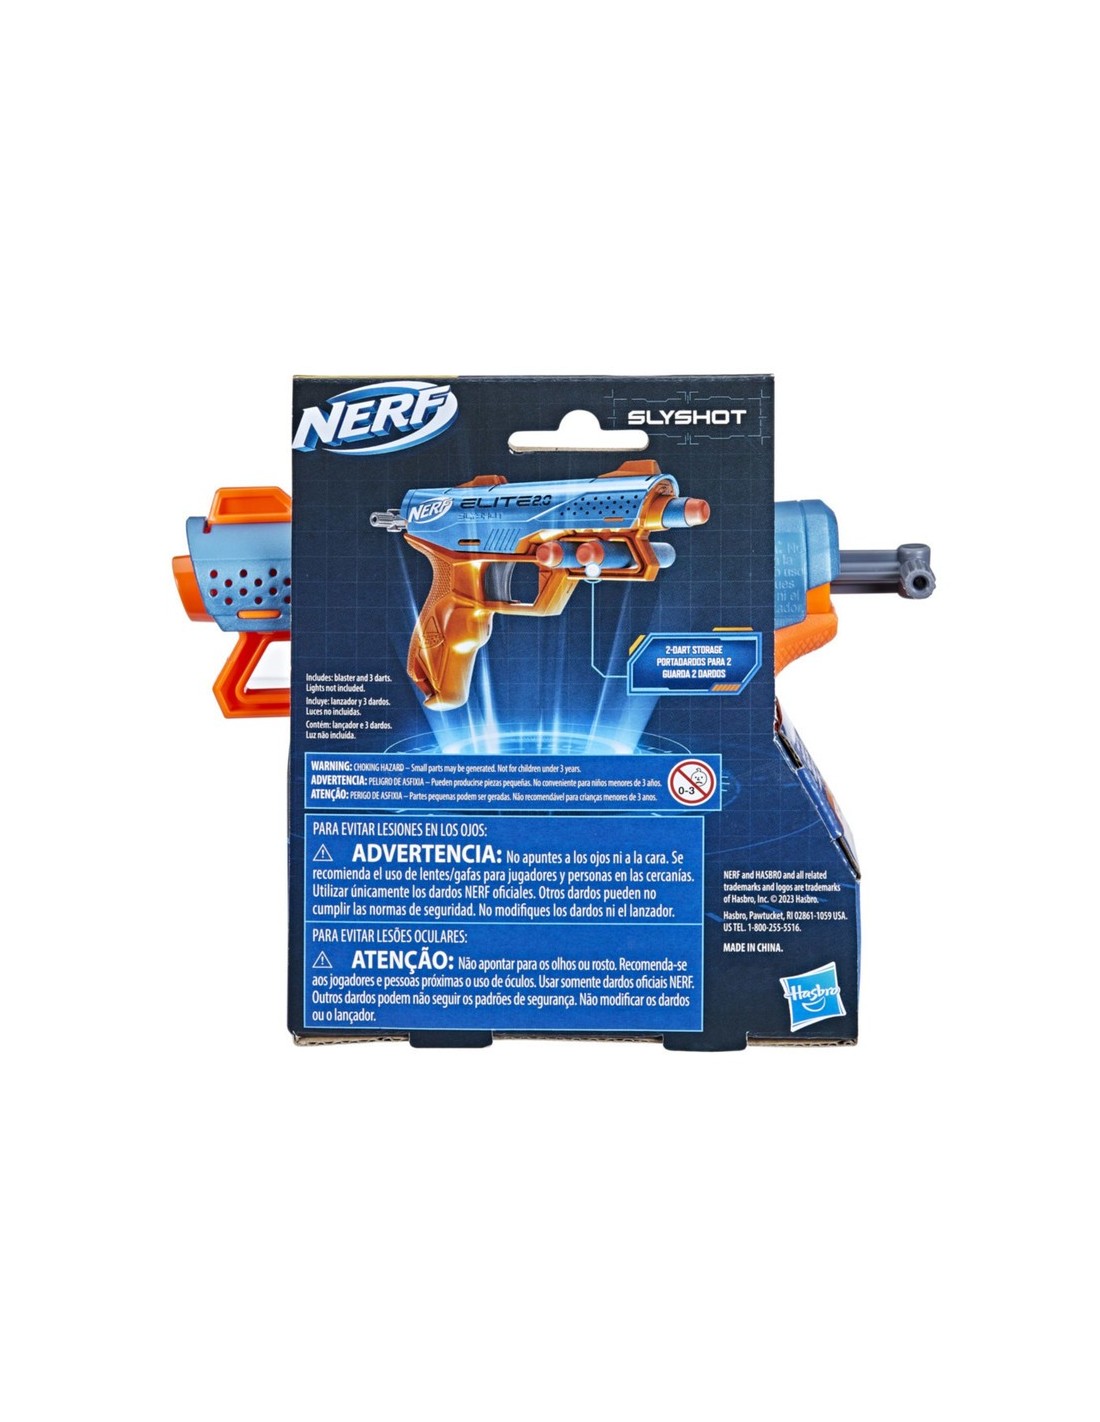 NERF Elite 2.0 - Recambio de dardos, 80 dardos Nerf Elite, compatible con  todos los lanzadores Nerf que utilizan dardos Elite, juegos al aire libre